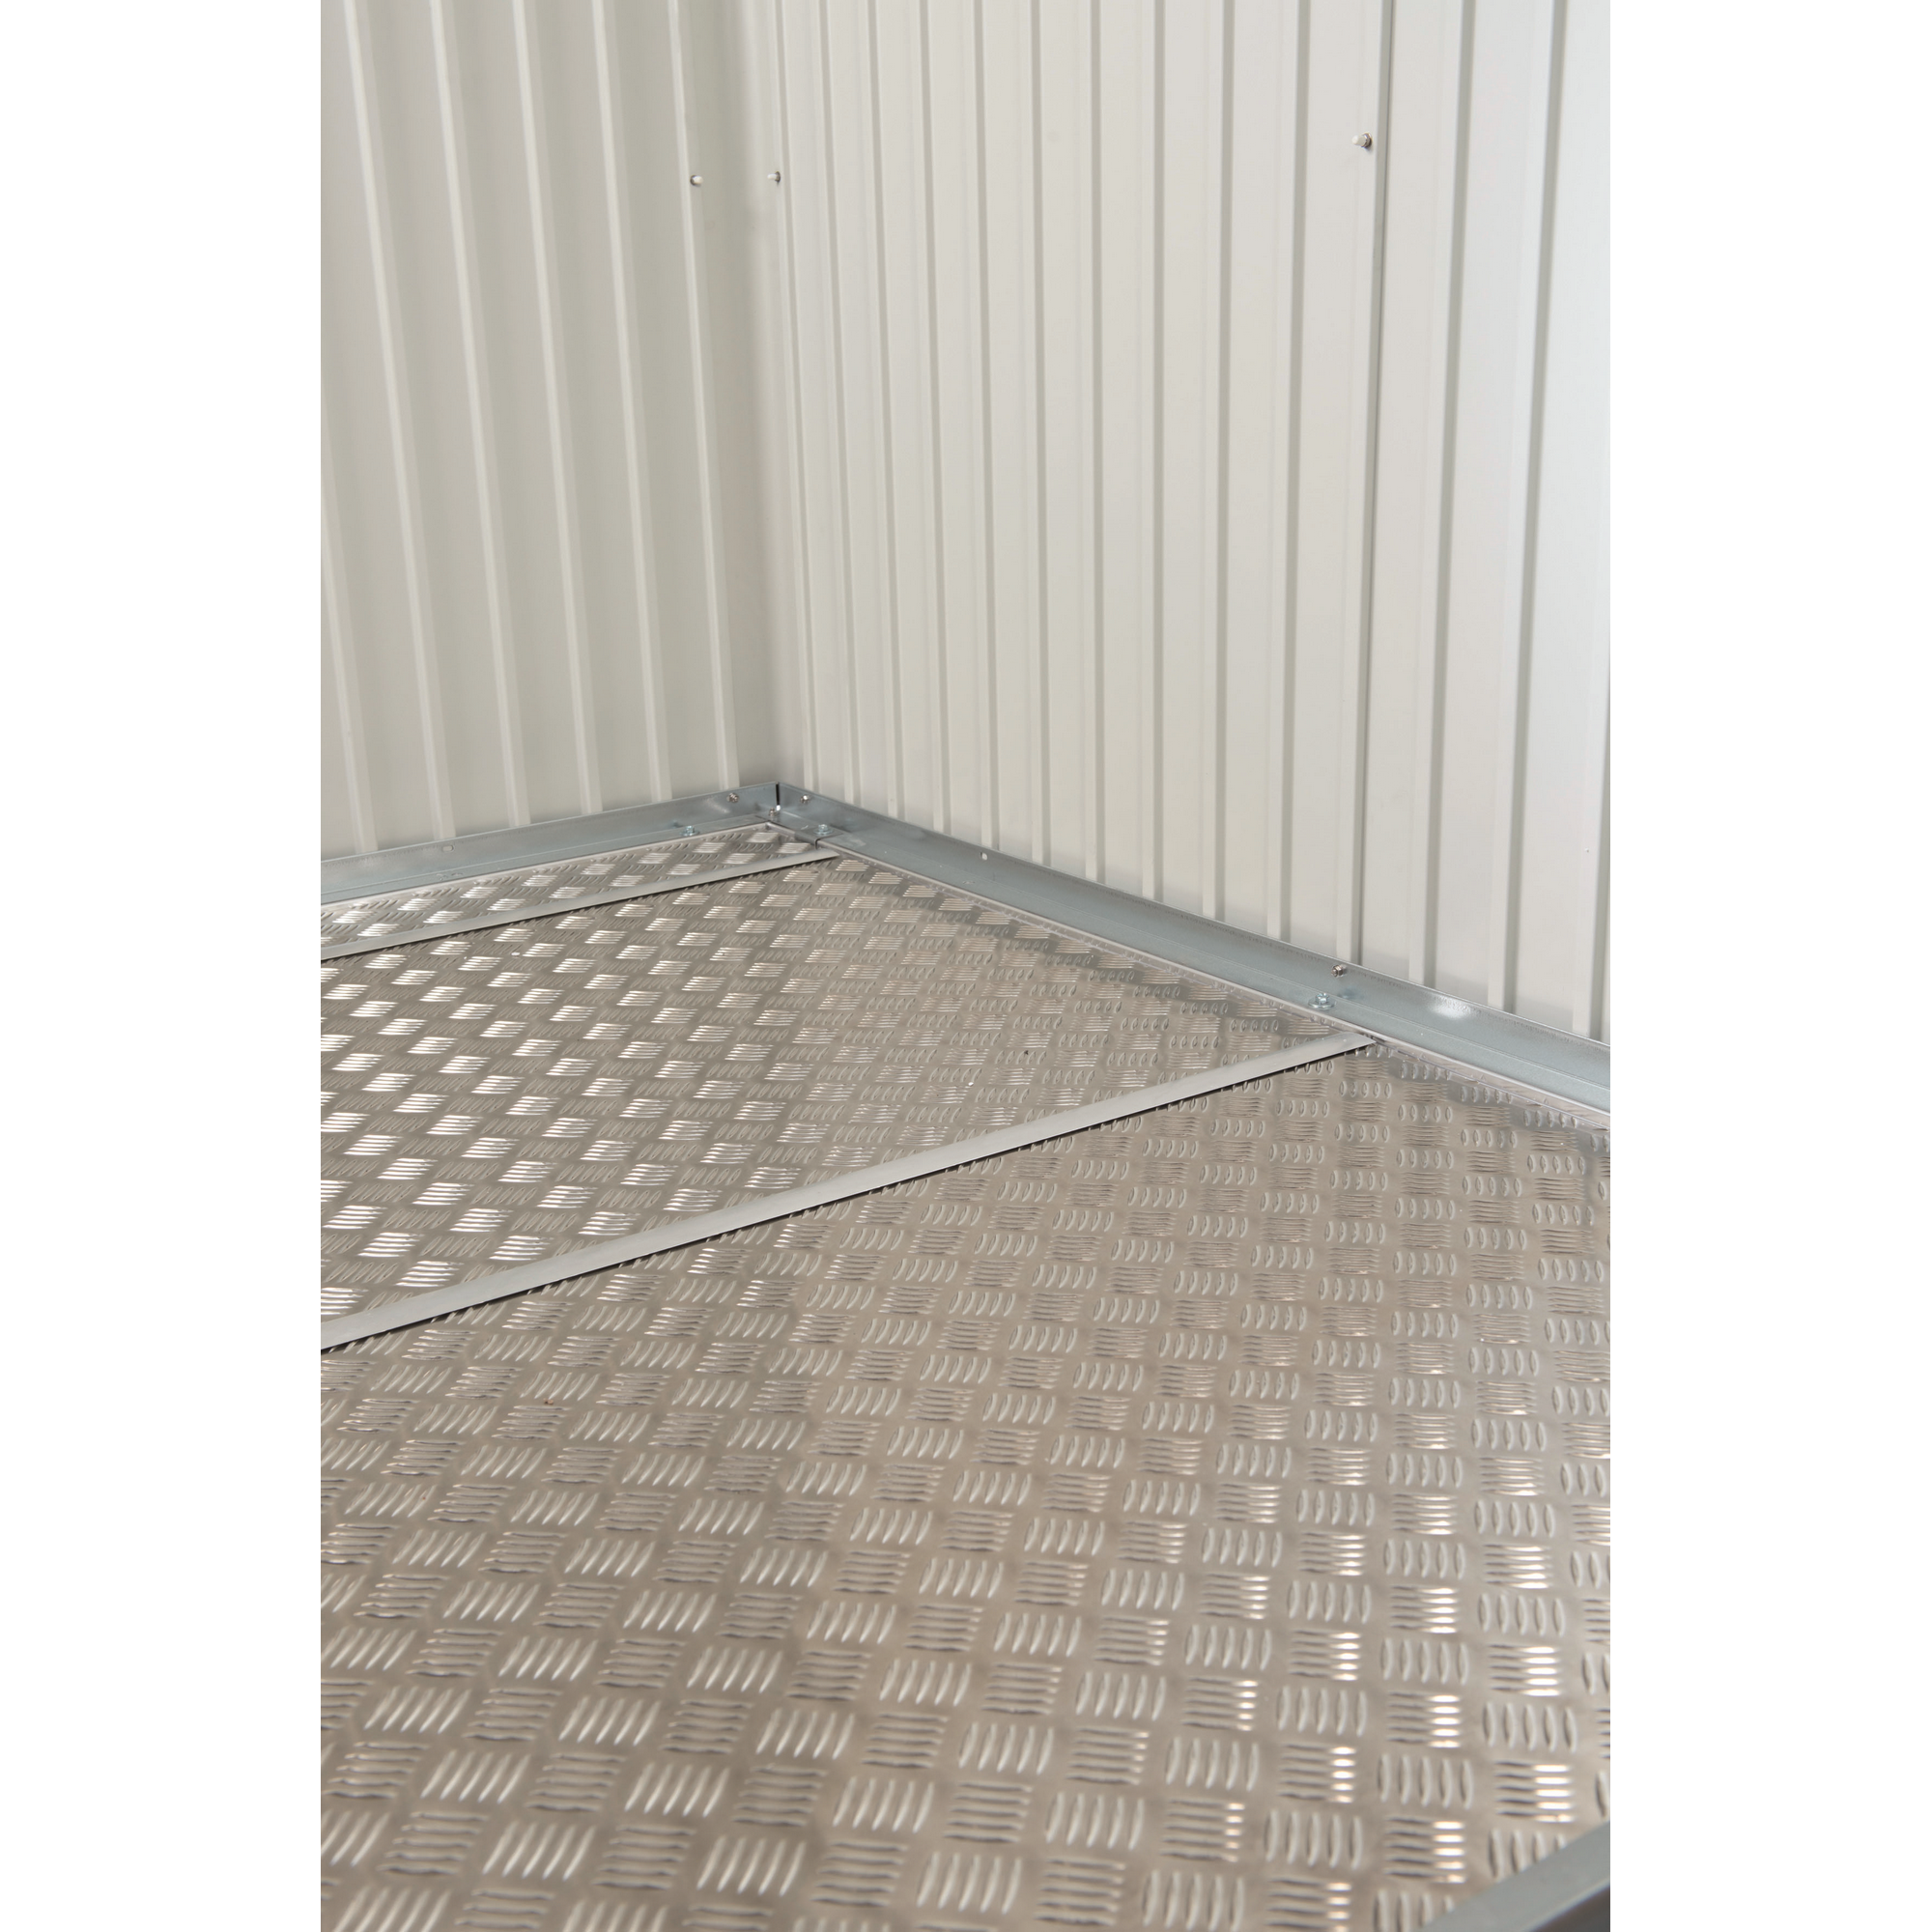 Bodenplatten für Gerätehaus 'Neo' Größe 2A/1B, 213 x 157,5 cm + product picture